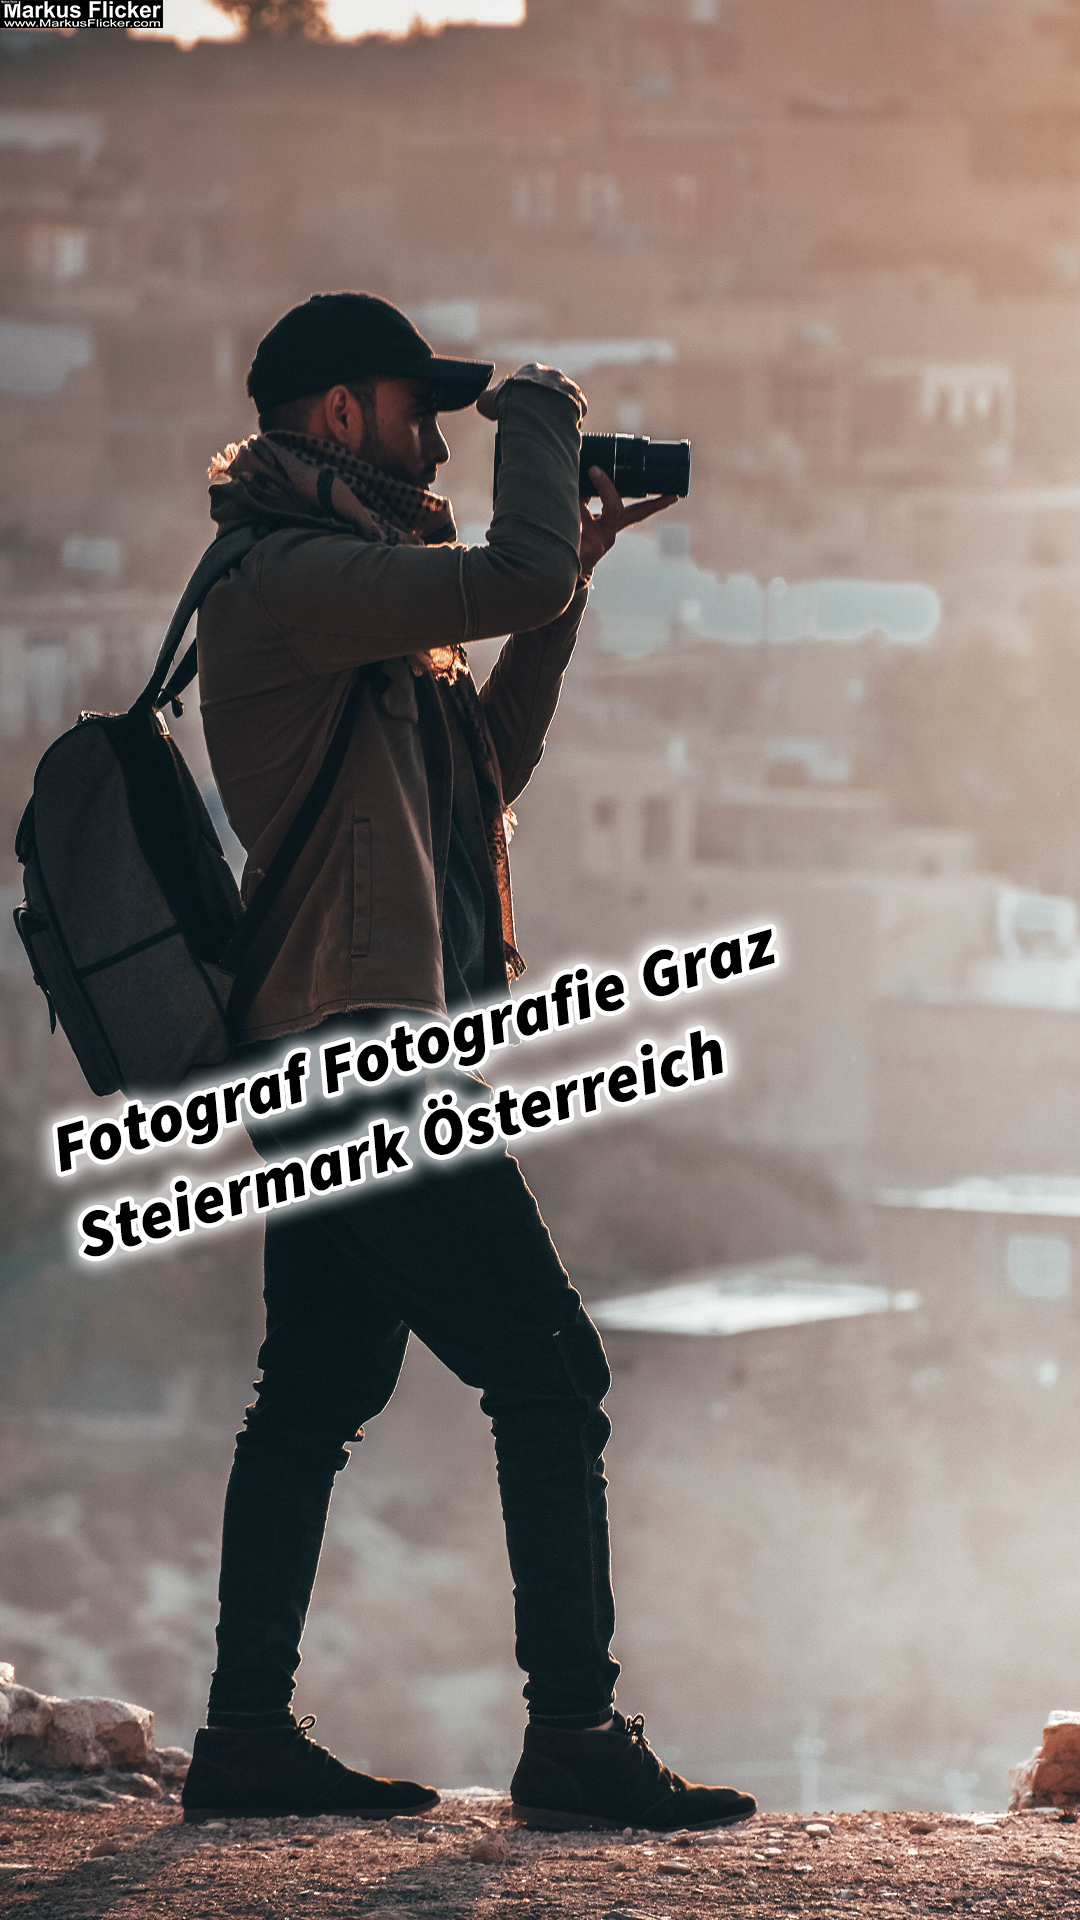 Fotograf Fotografie Graz Steiermark Österreich